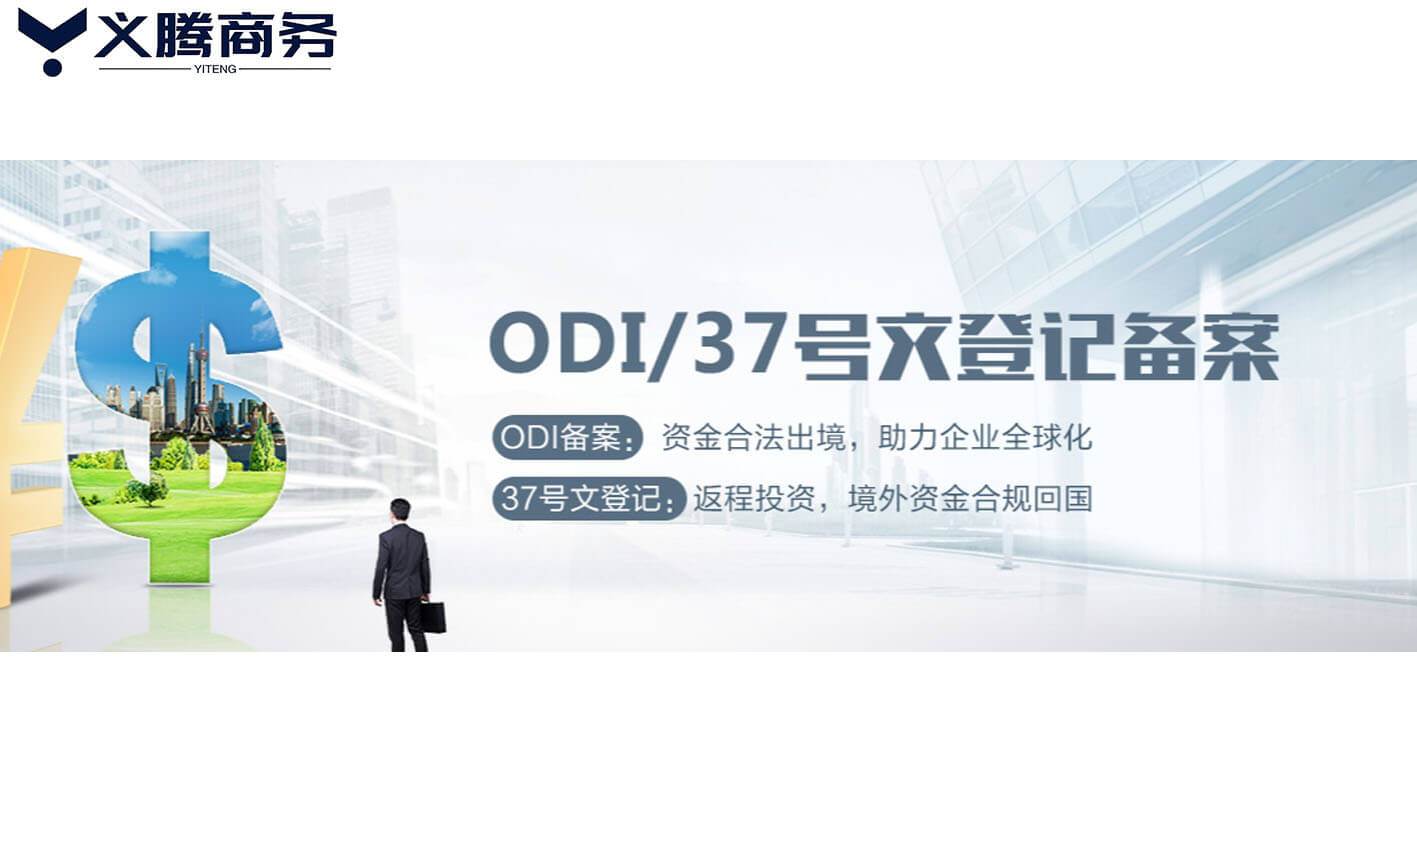 国内企业去香港成立公司，需要办理ODI境外投资备案吗？